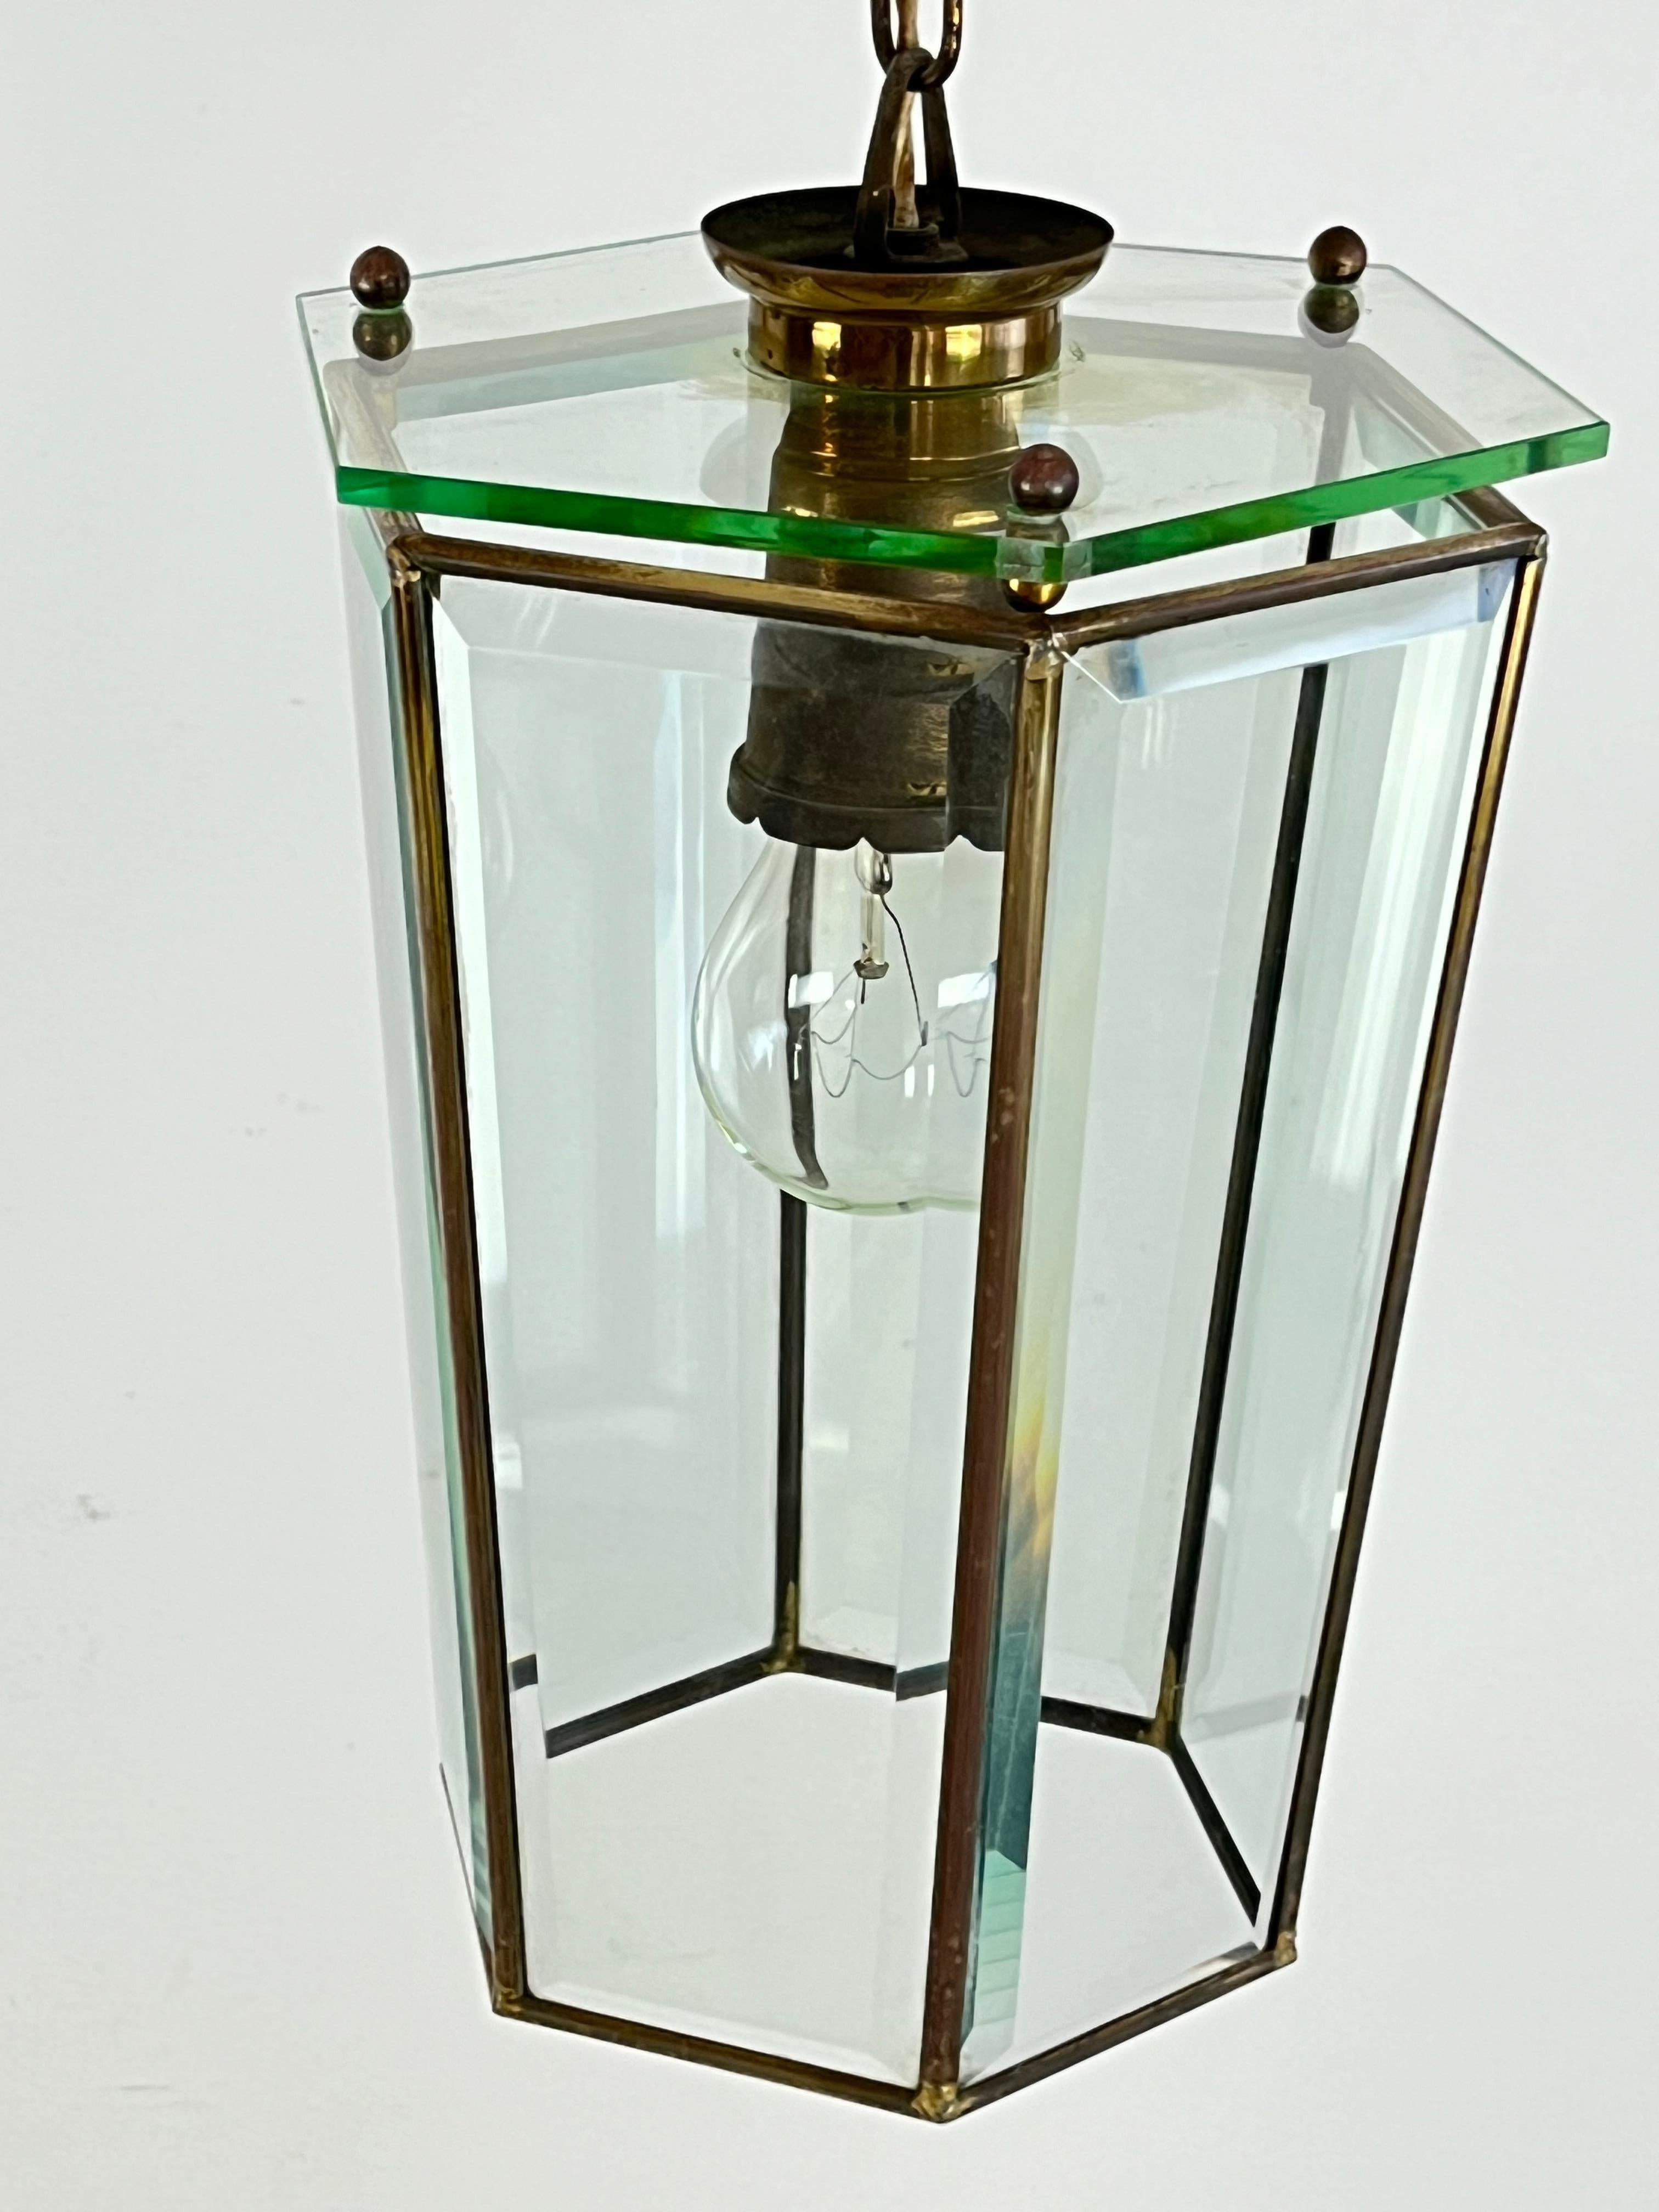 Hängeleuchte aus Messing und geschliffenem Glas, Adolf Loos zugeschrieben, Österreich, 1930er Jahre
Es ist in gutem Zustand und funktioniert. E27-Lampe.
Der Kronleuchter ist 21 cm x 18 cm x 30 cm hoch (98 cm mit Kette).

 Für Loos war das Ornament